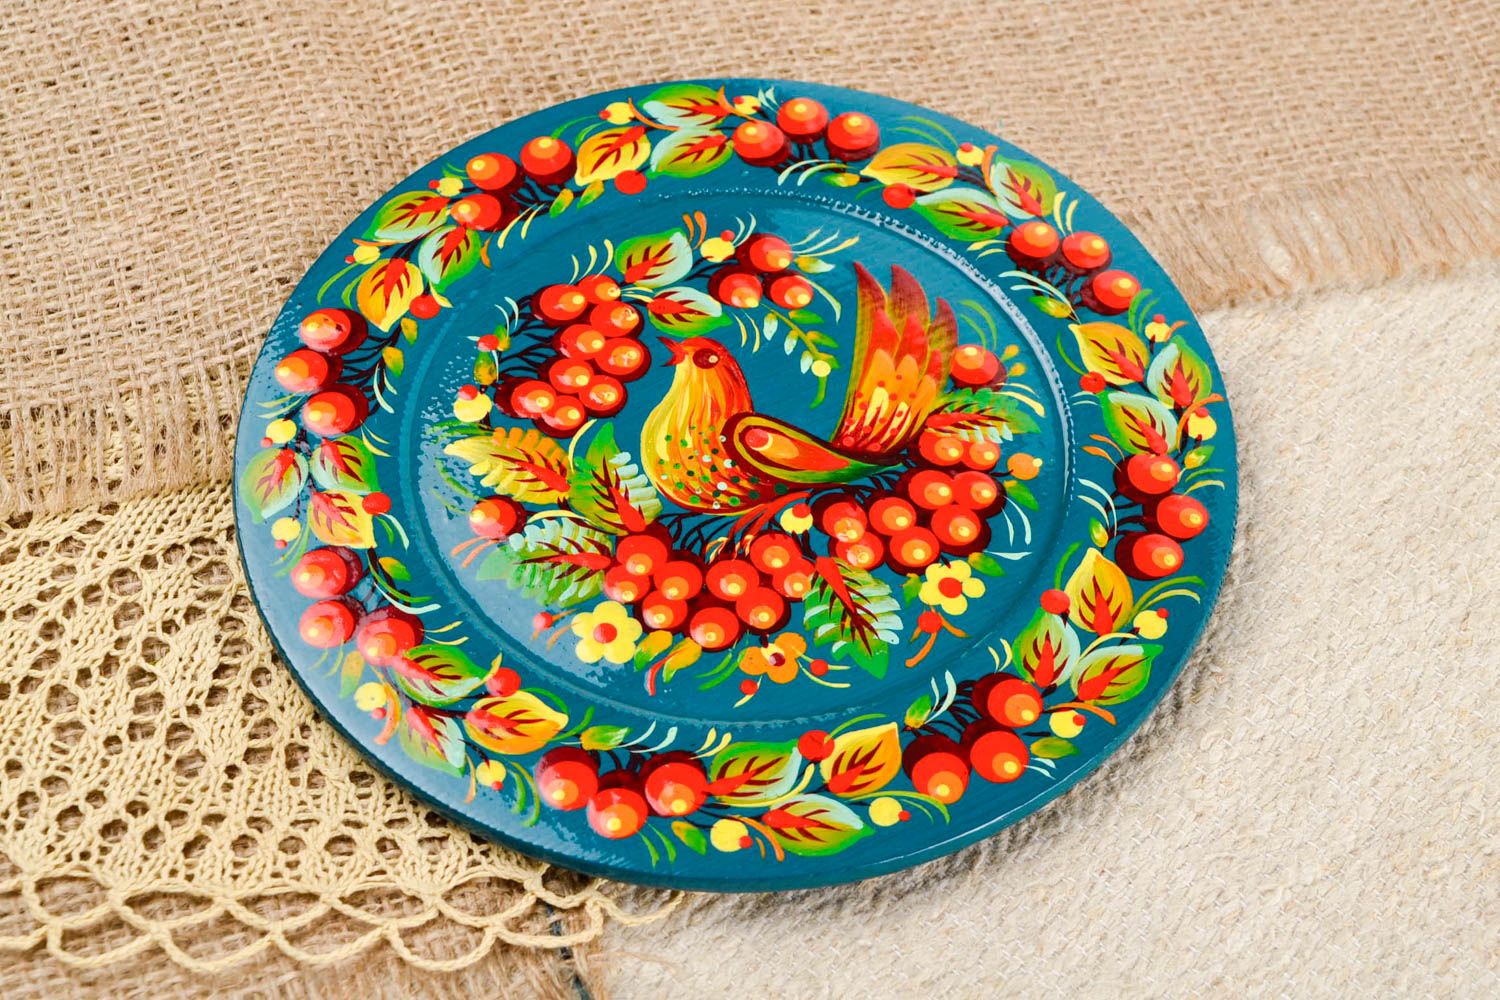 Расписная тарелка ручной работы тарелка на стену темно-синяя декоративная посуда фото 1